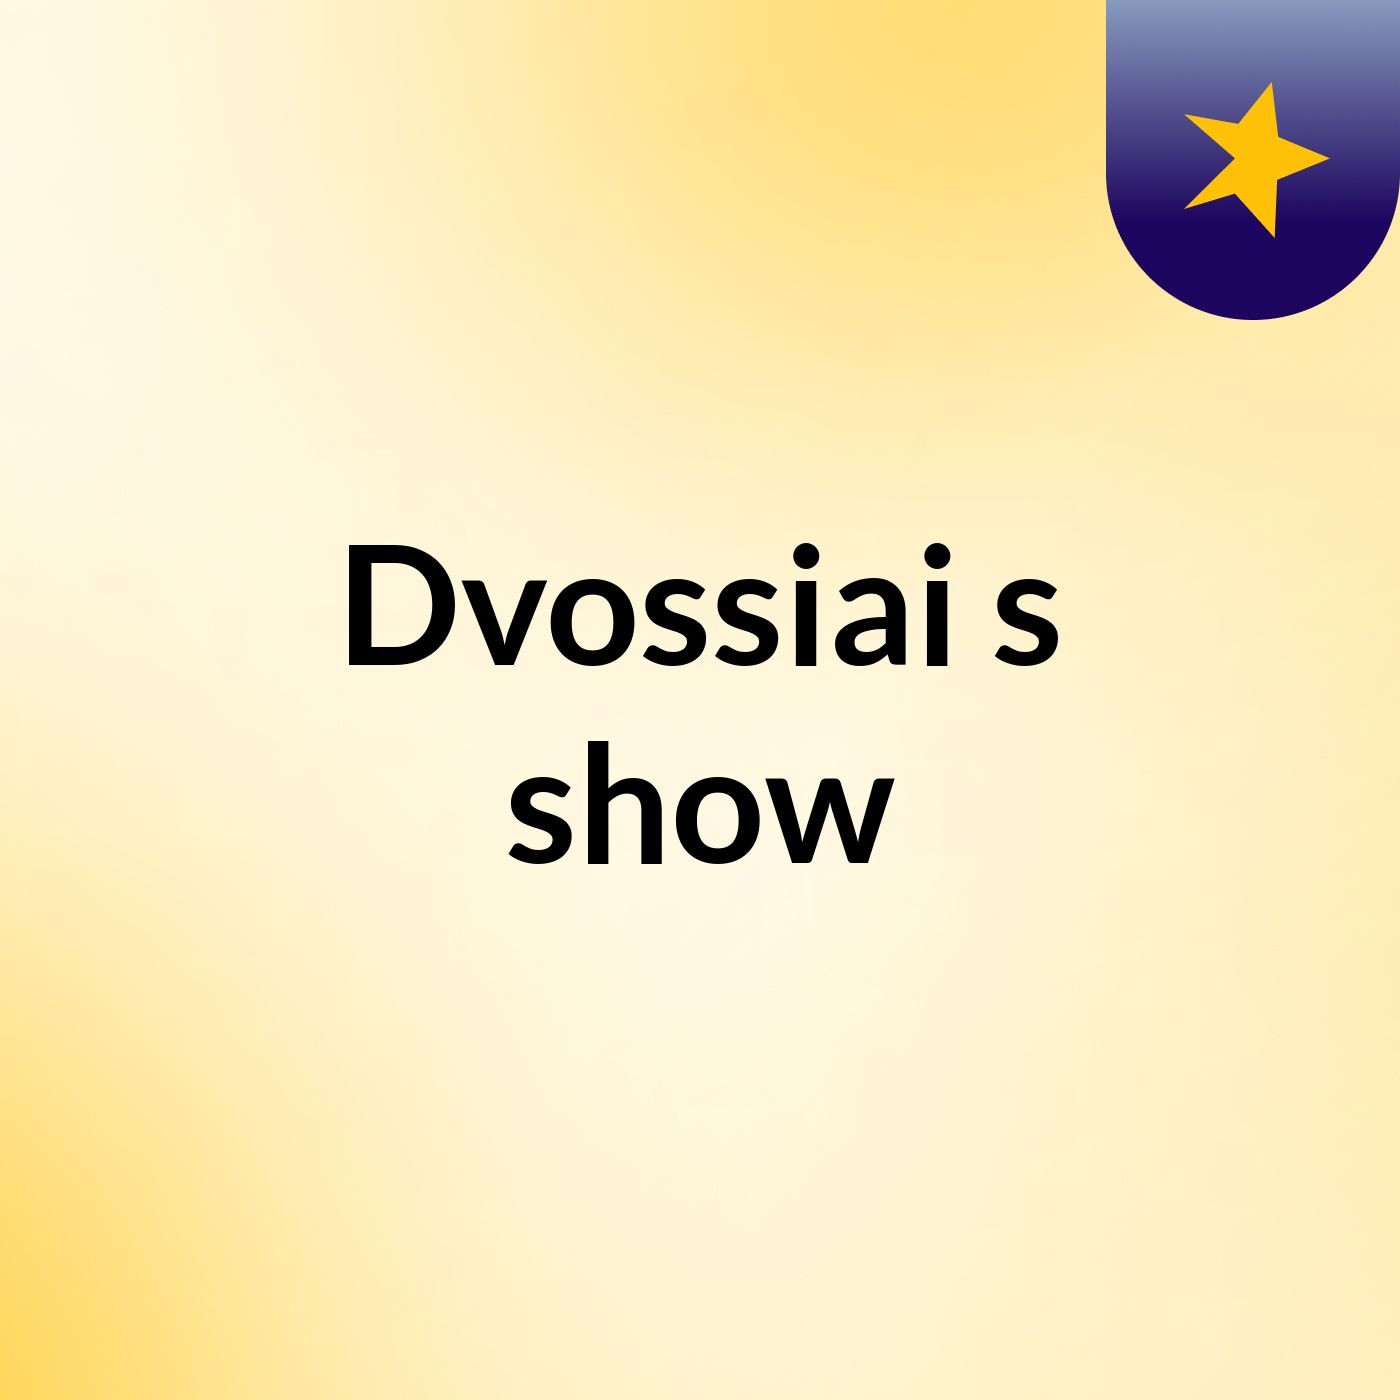 Dvossiai's show